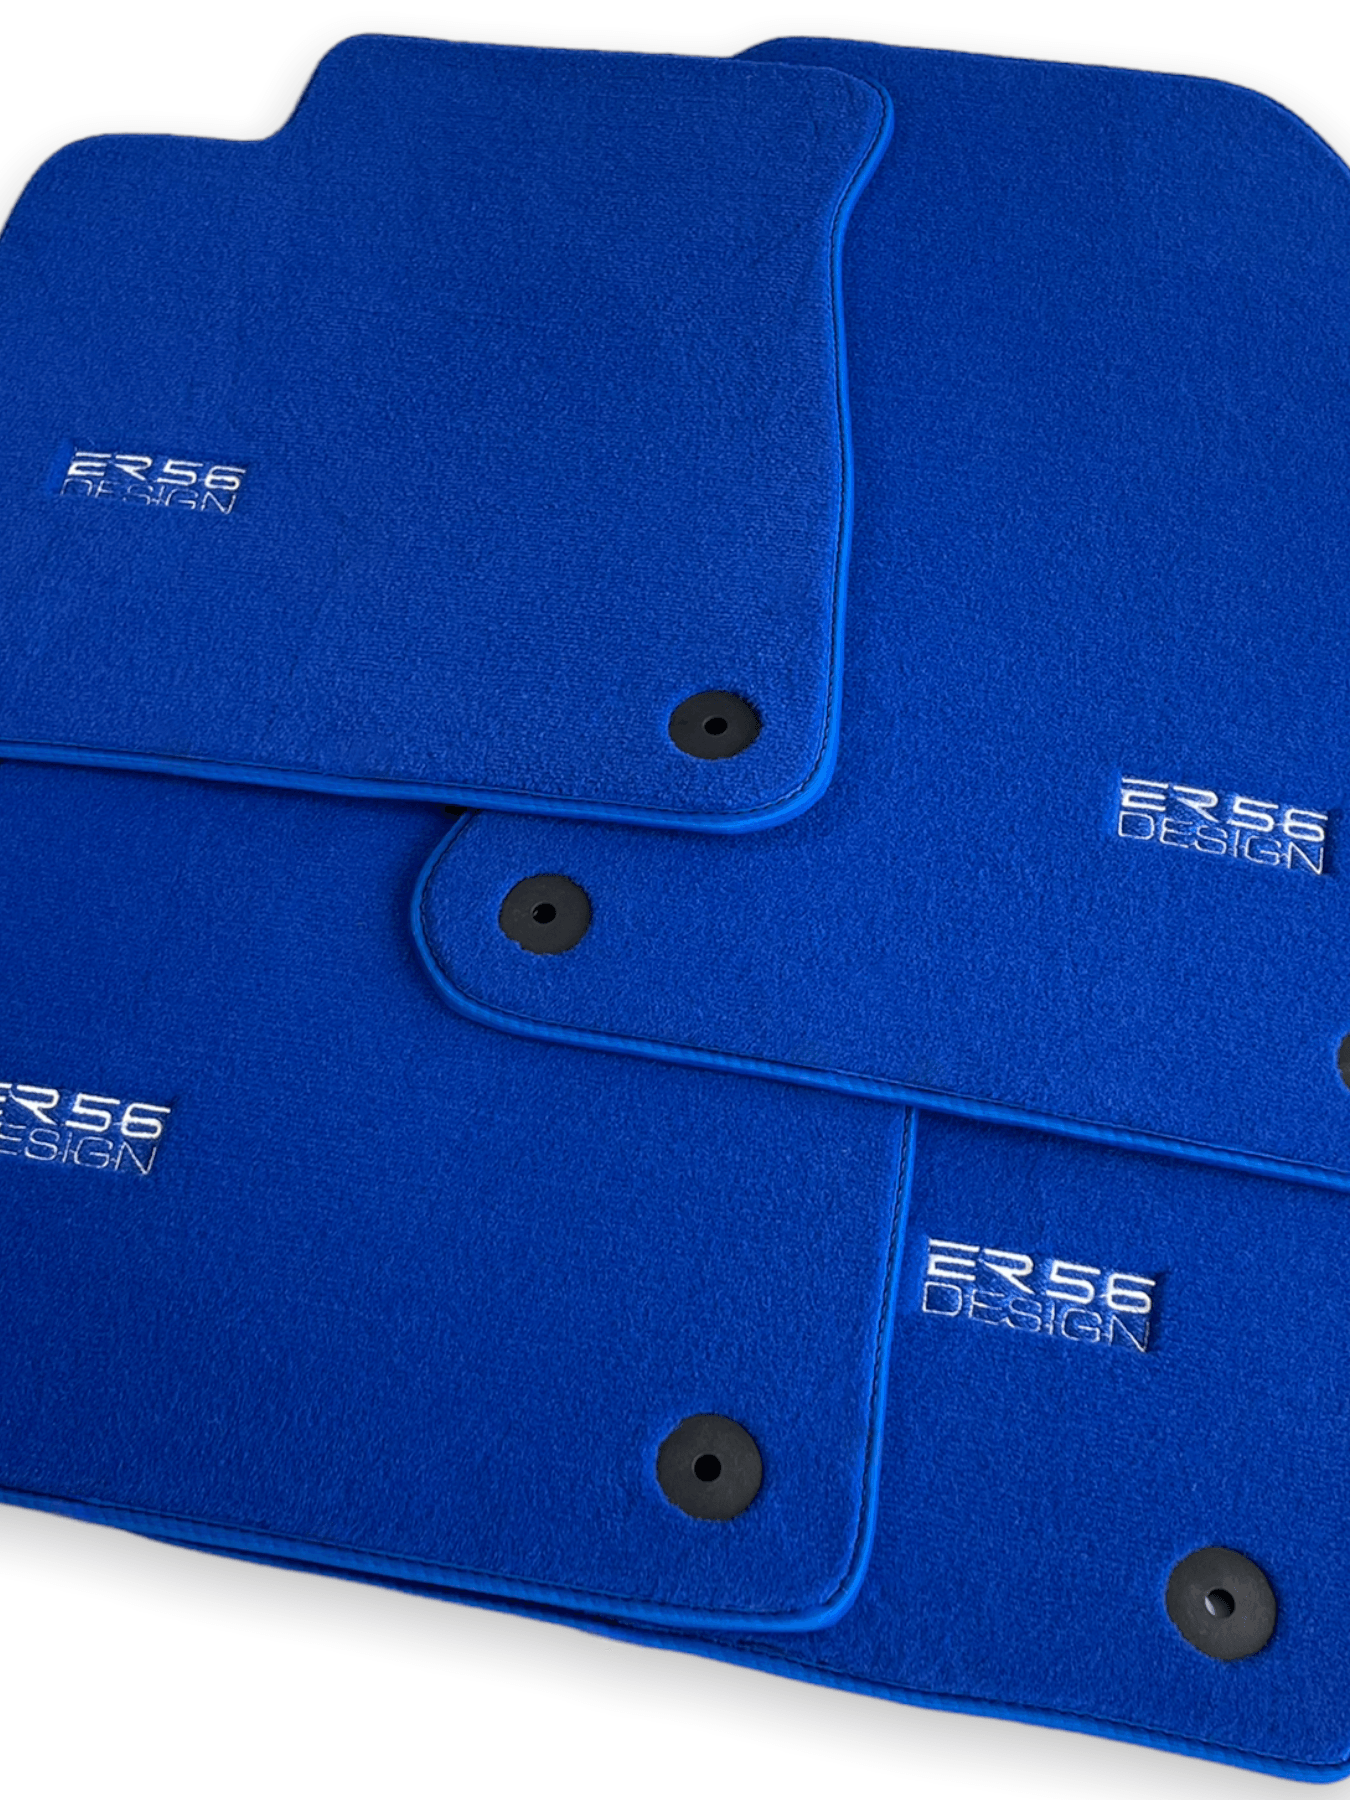 Blue Floor Mats for Audi A6 - C7 Sedan (2011-2018) | ER56 Design